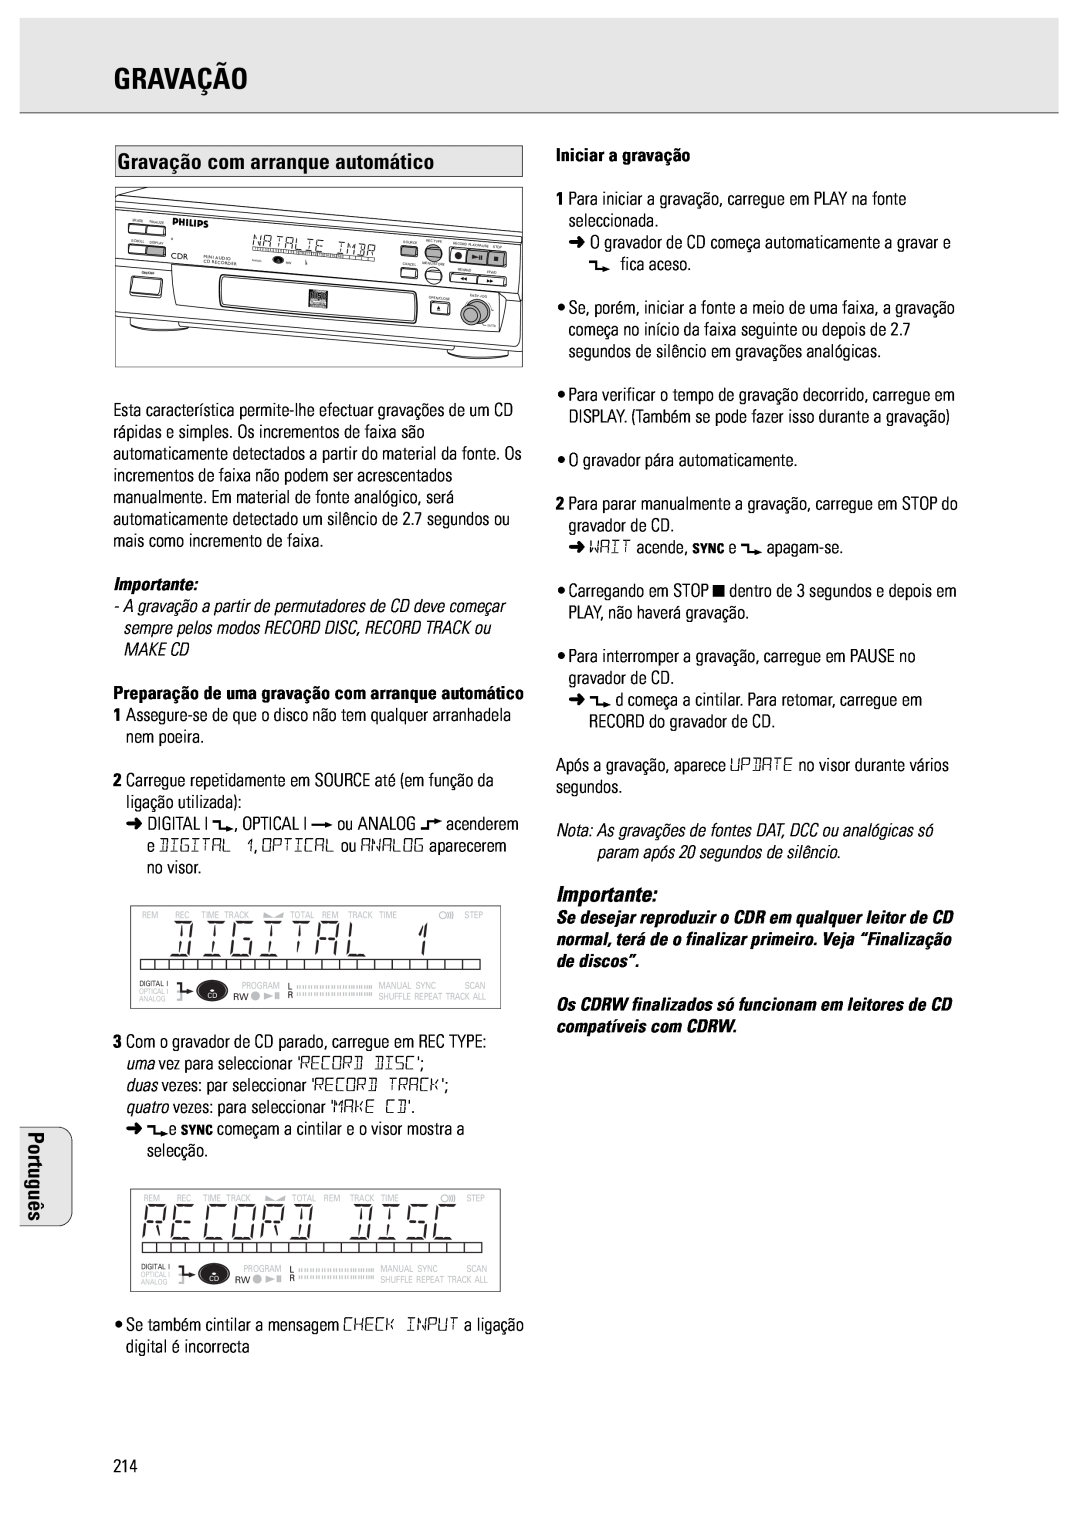 Philips CDR570 manual Gravação com arranque automático, Make Cd, Português, Importante 